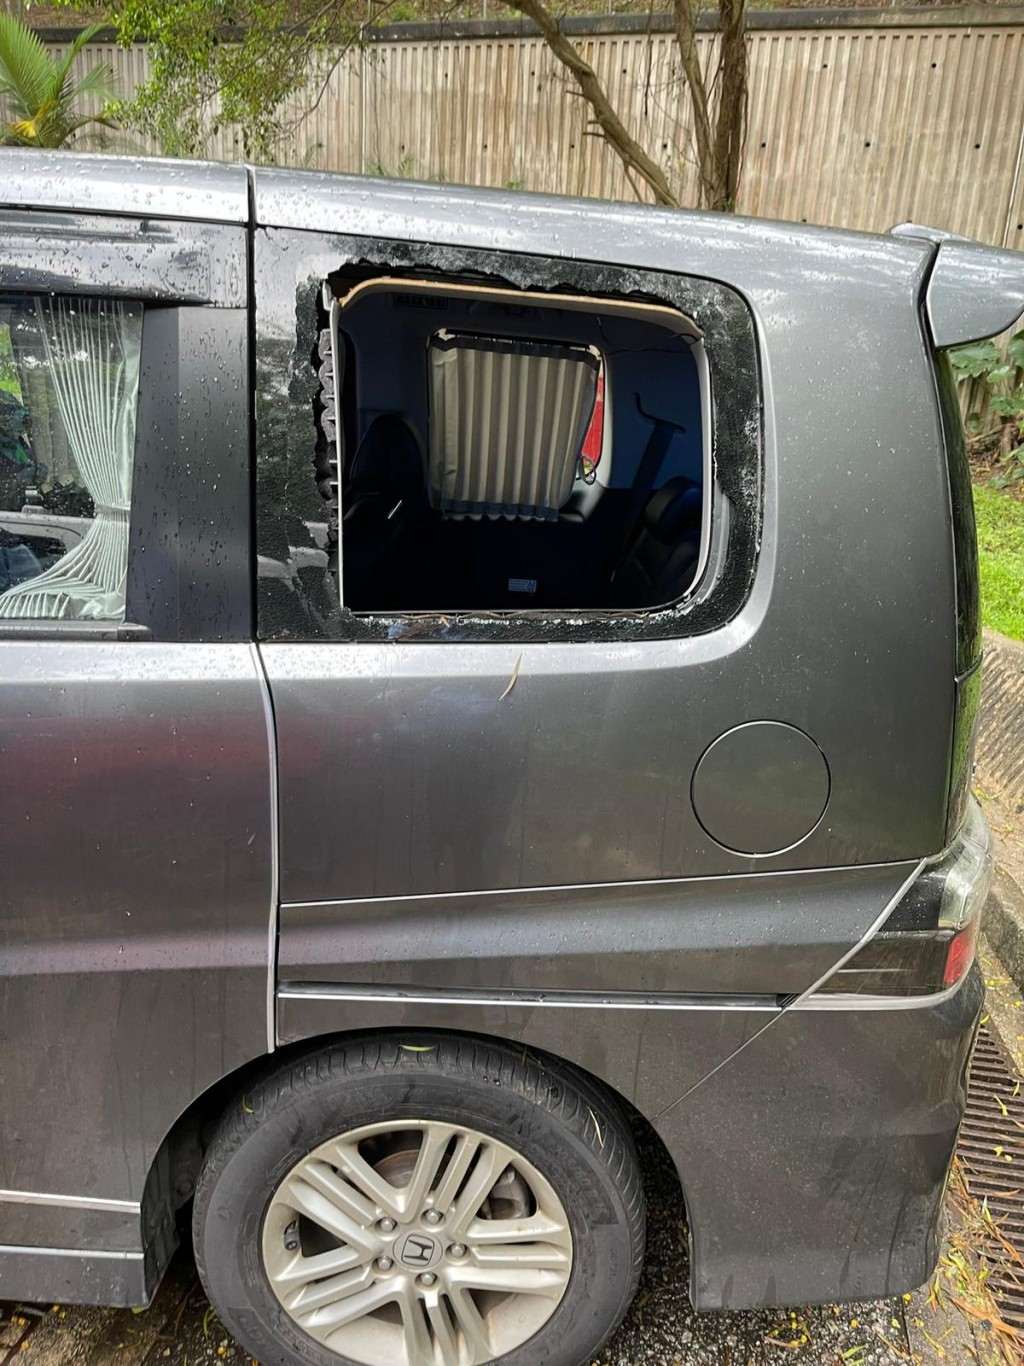 私家车玻璃车窗被打爆。图:警方提供